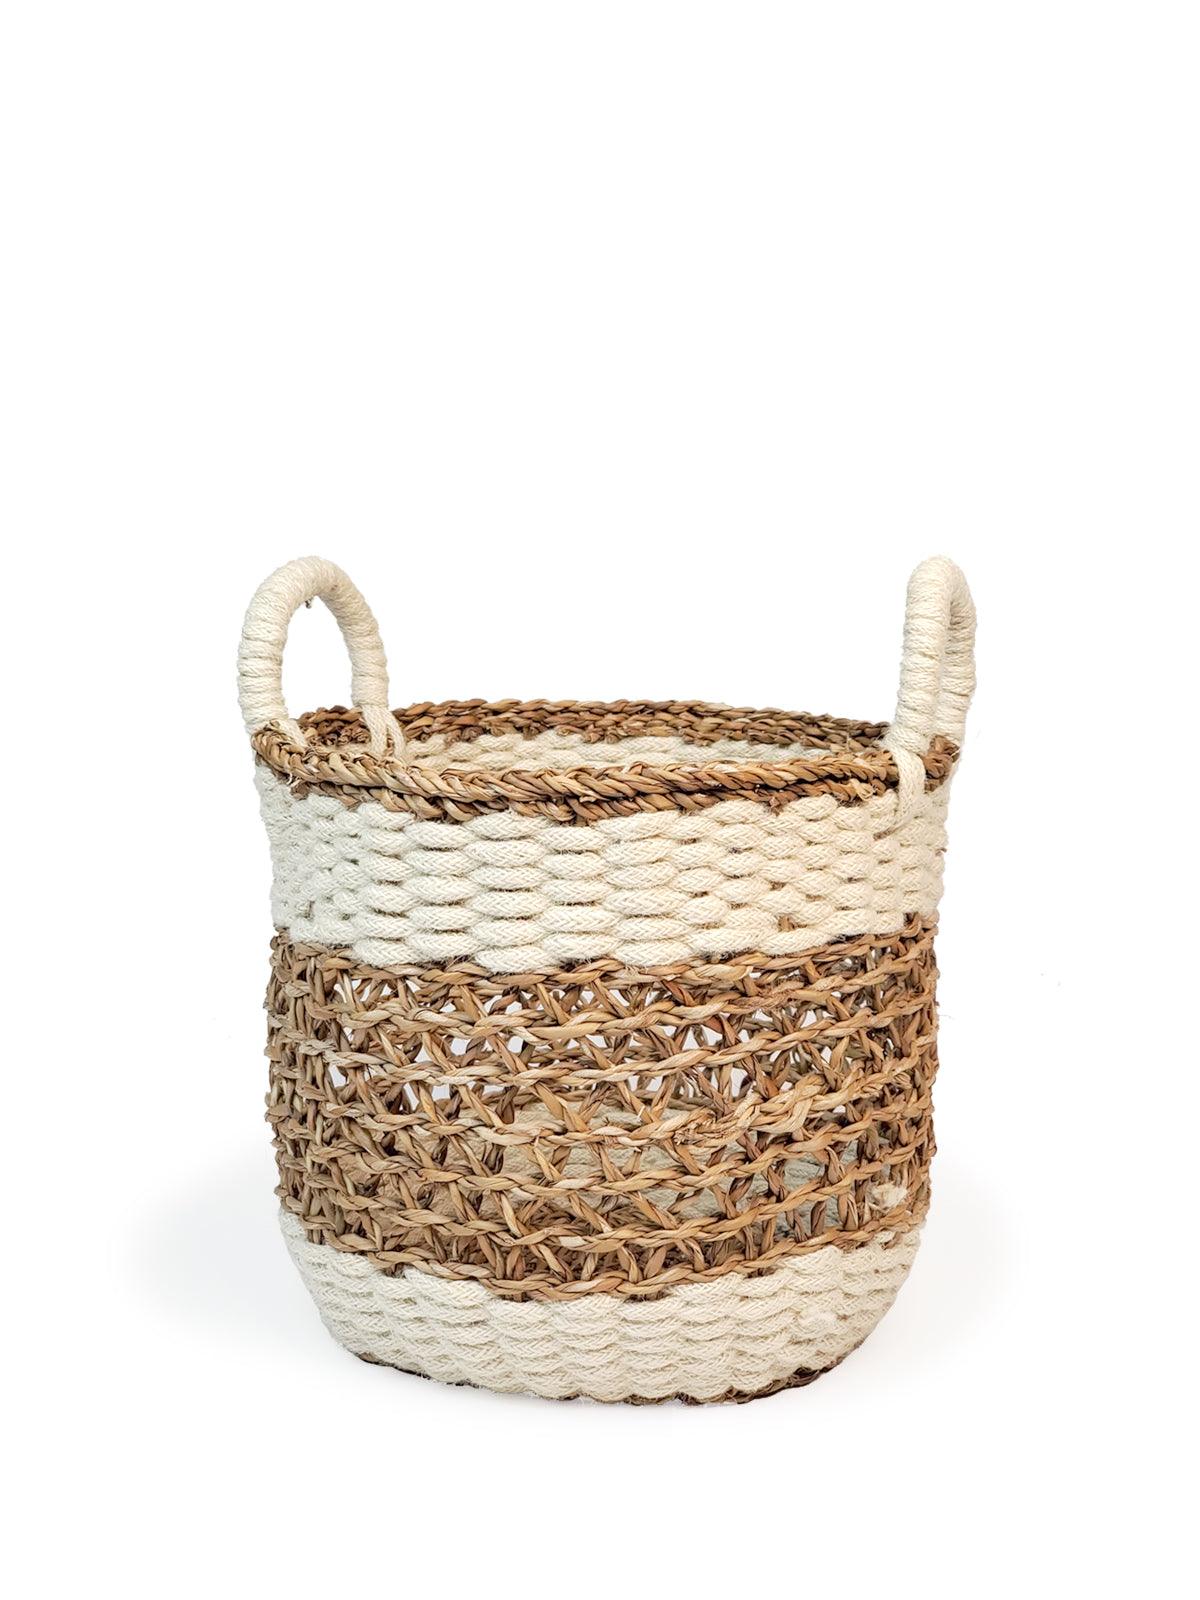 Ula Mesh Basket - Natural - Plant Paradise Boutique